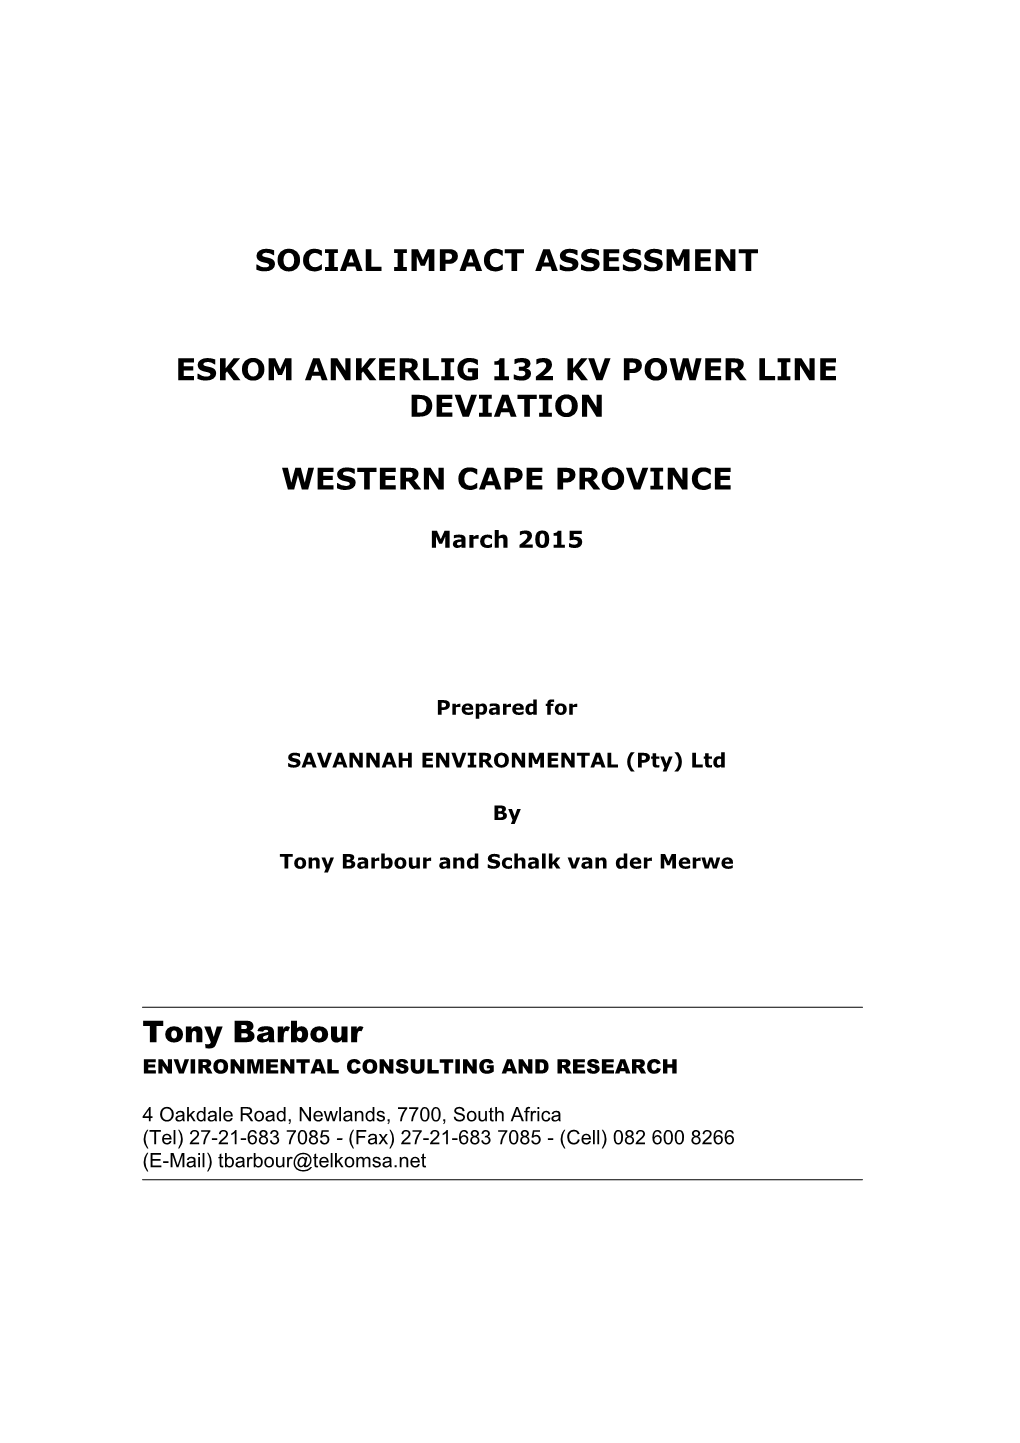 Social Impact Assessment Eskom Ankerlig 132 Kv Power Line